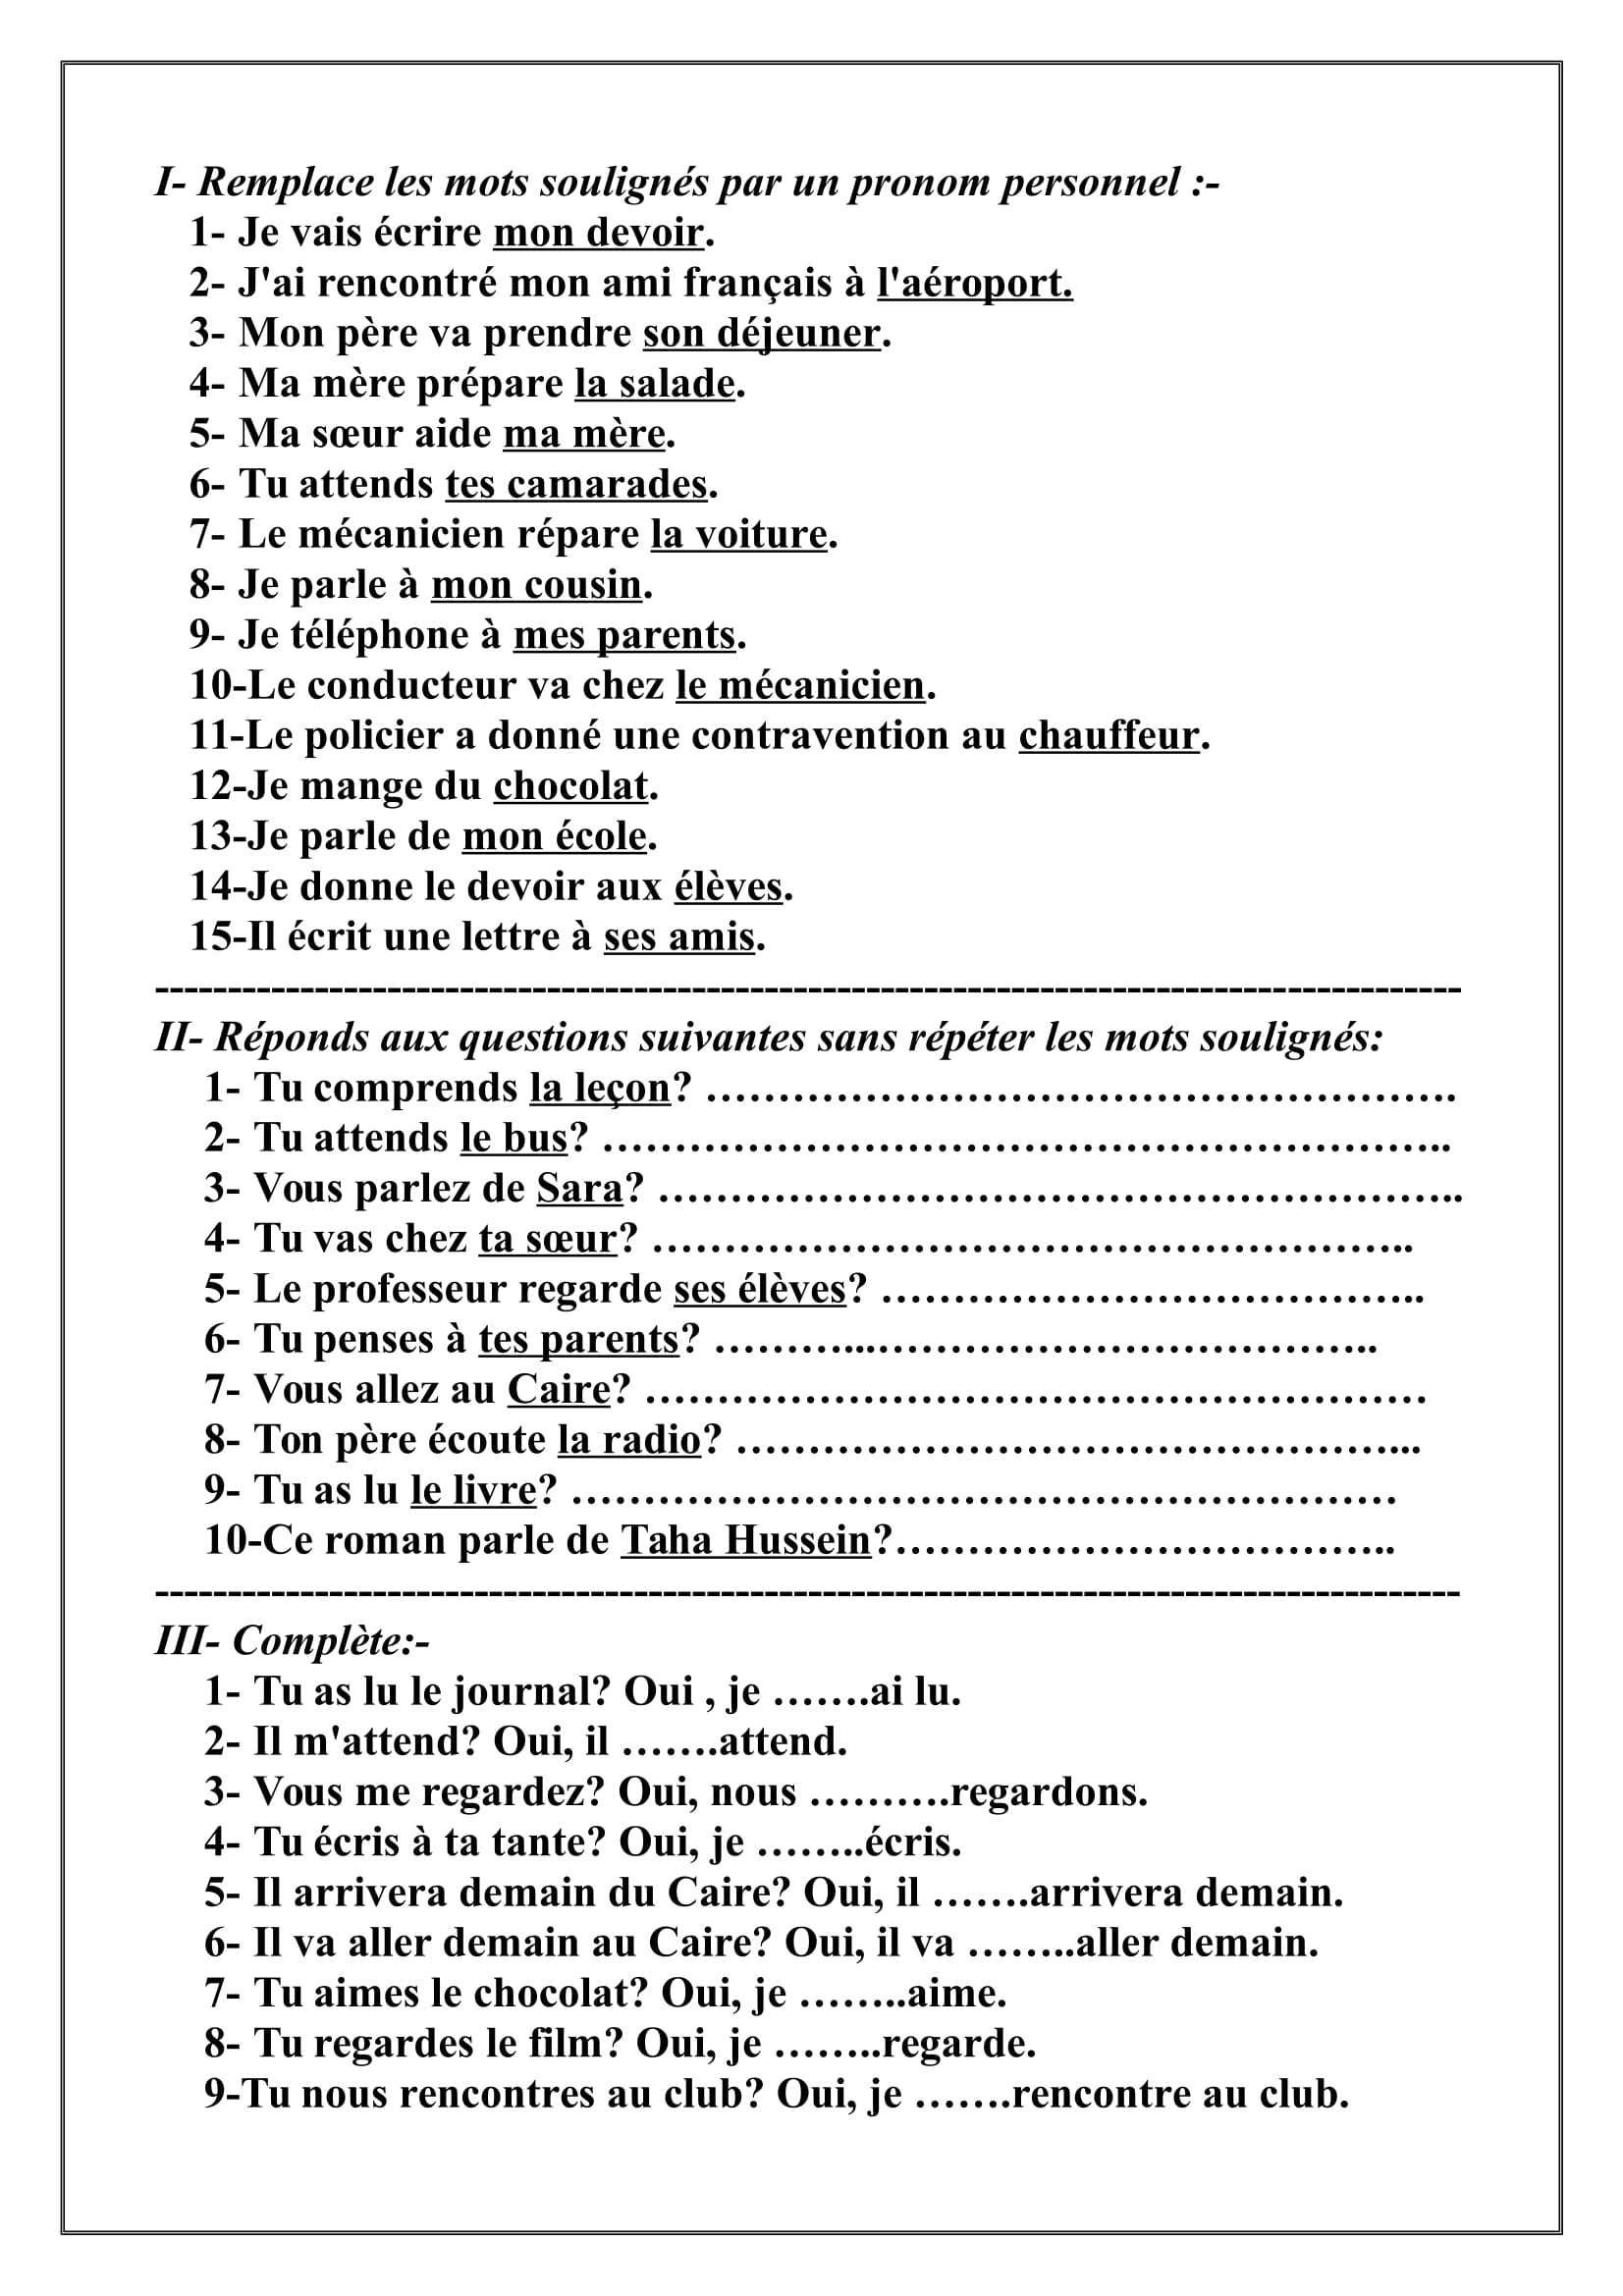 أسئلة متنوعة للتدريب على الضمائر فى اللغة الفرنسية للصف الثانى الثانوى الترم الاول